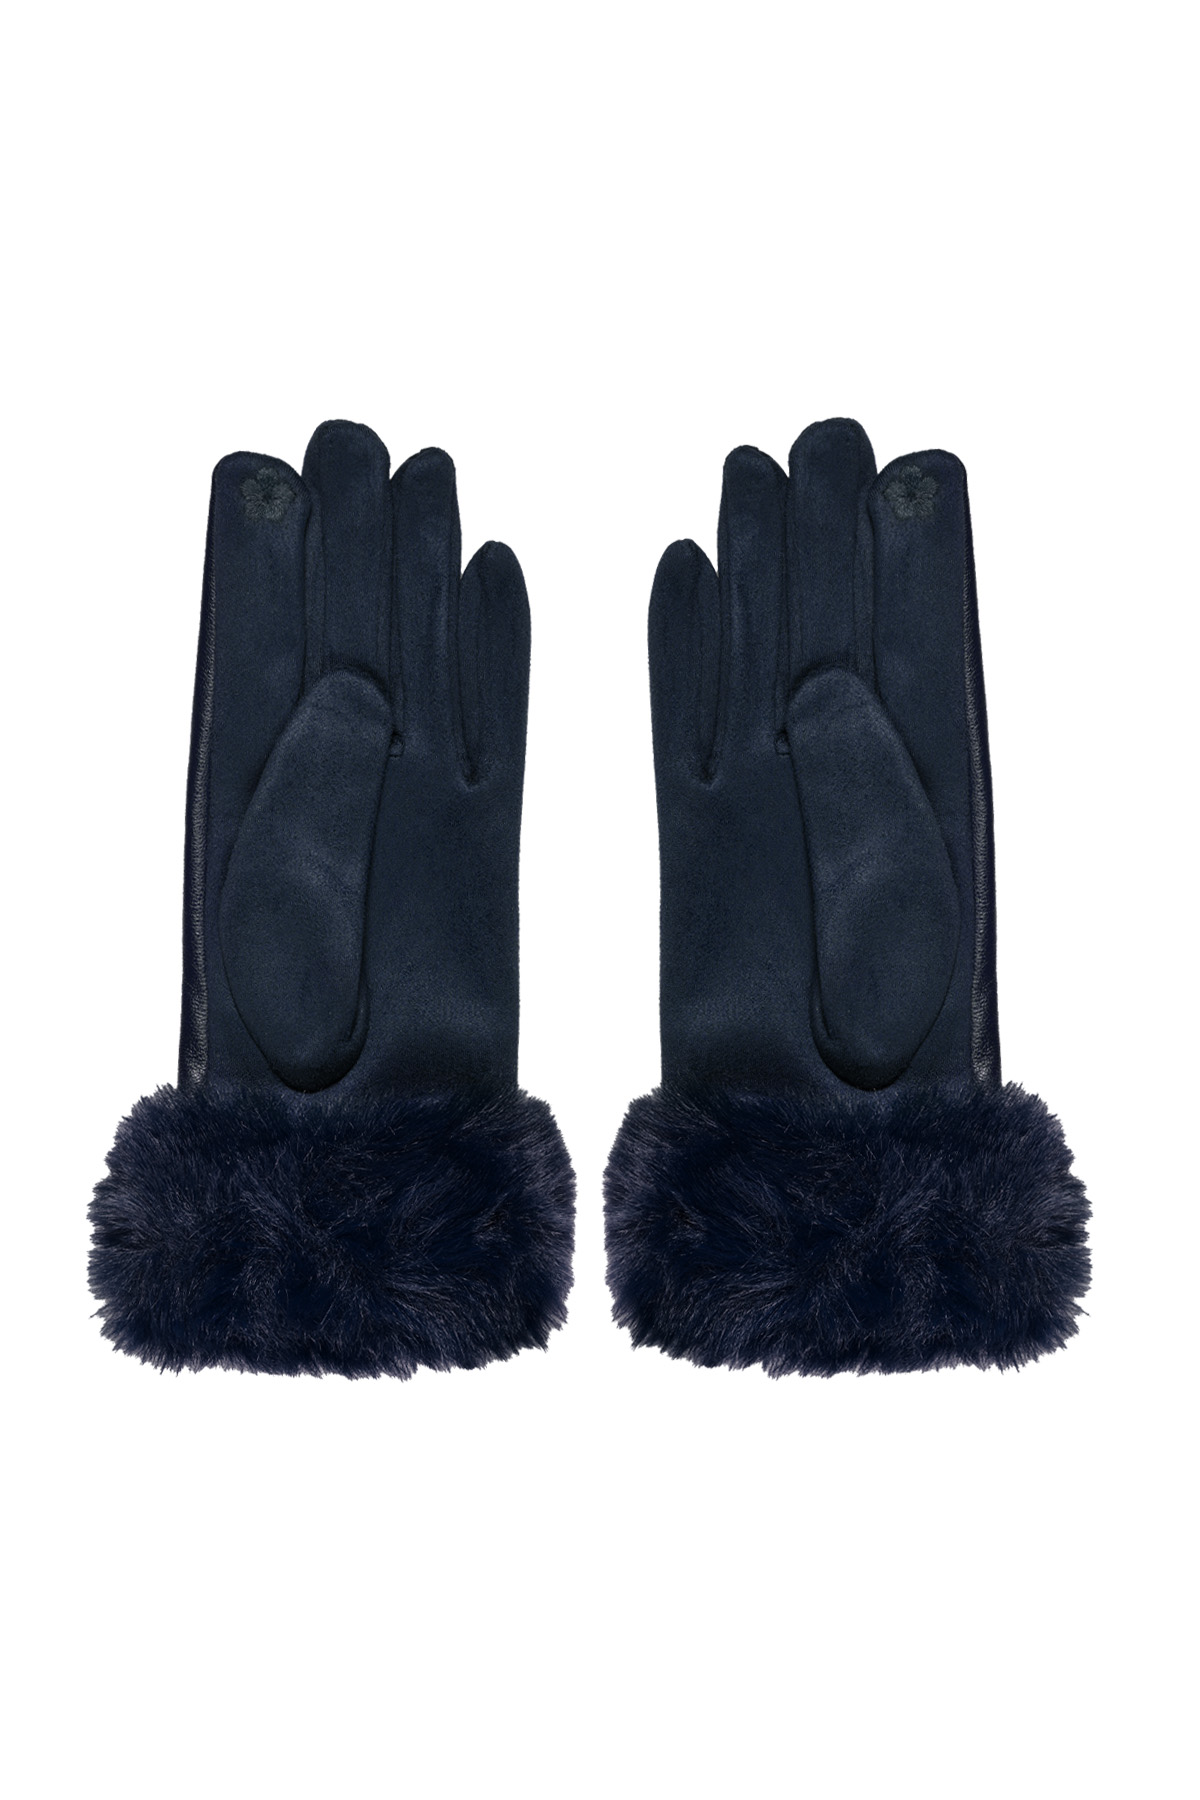 Handschoenen fluf - navy blauw h5 Afbeelding3